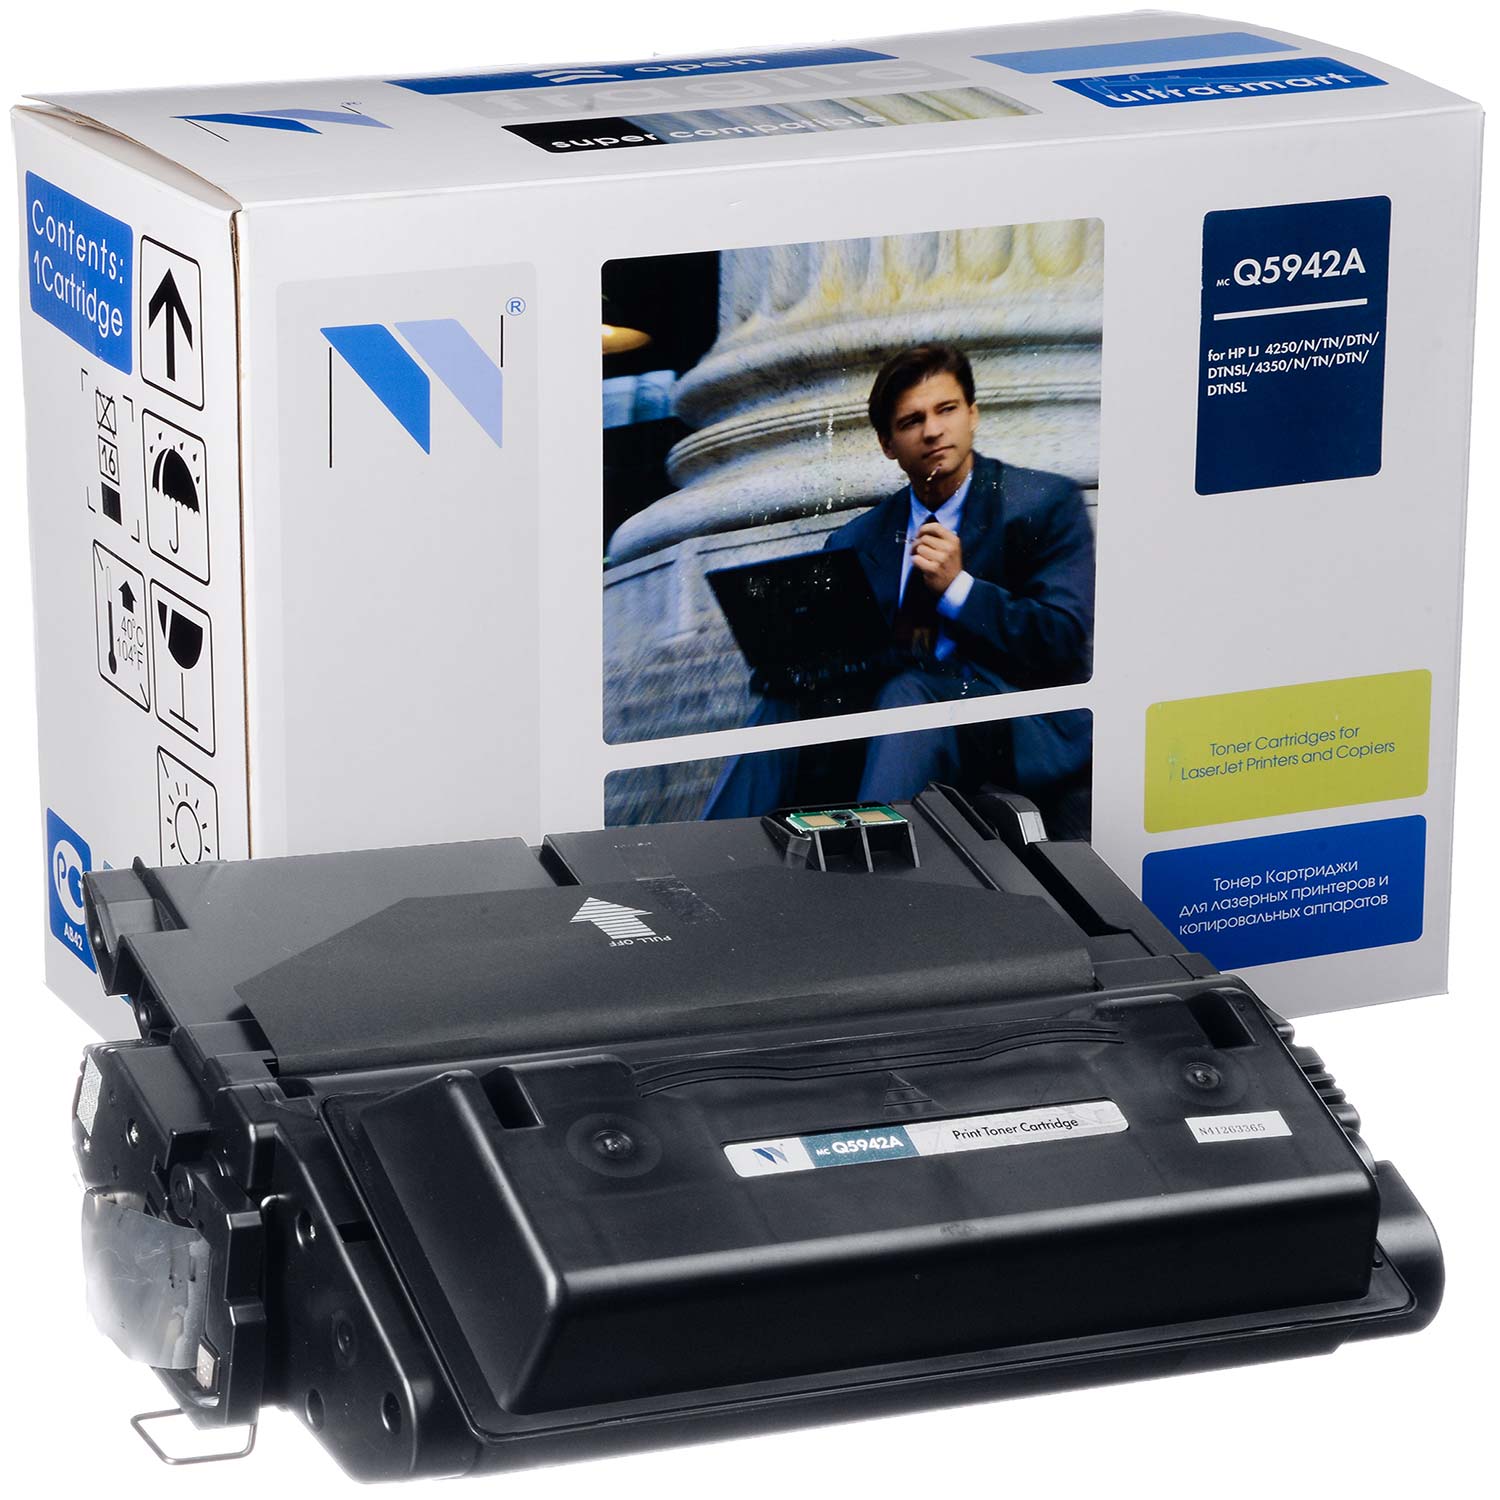   NV-Print  HP LaserJet 4240/4250/4350, Q5942A